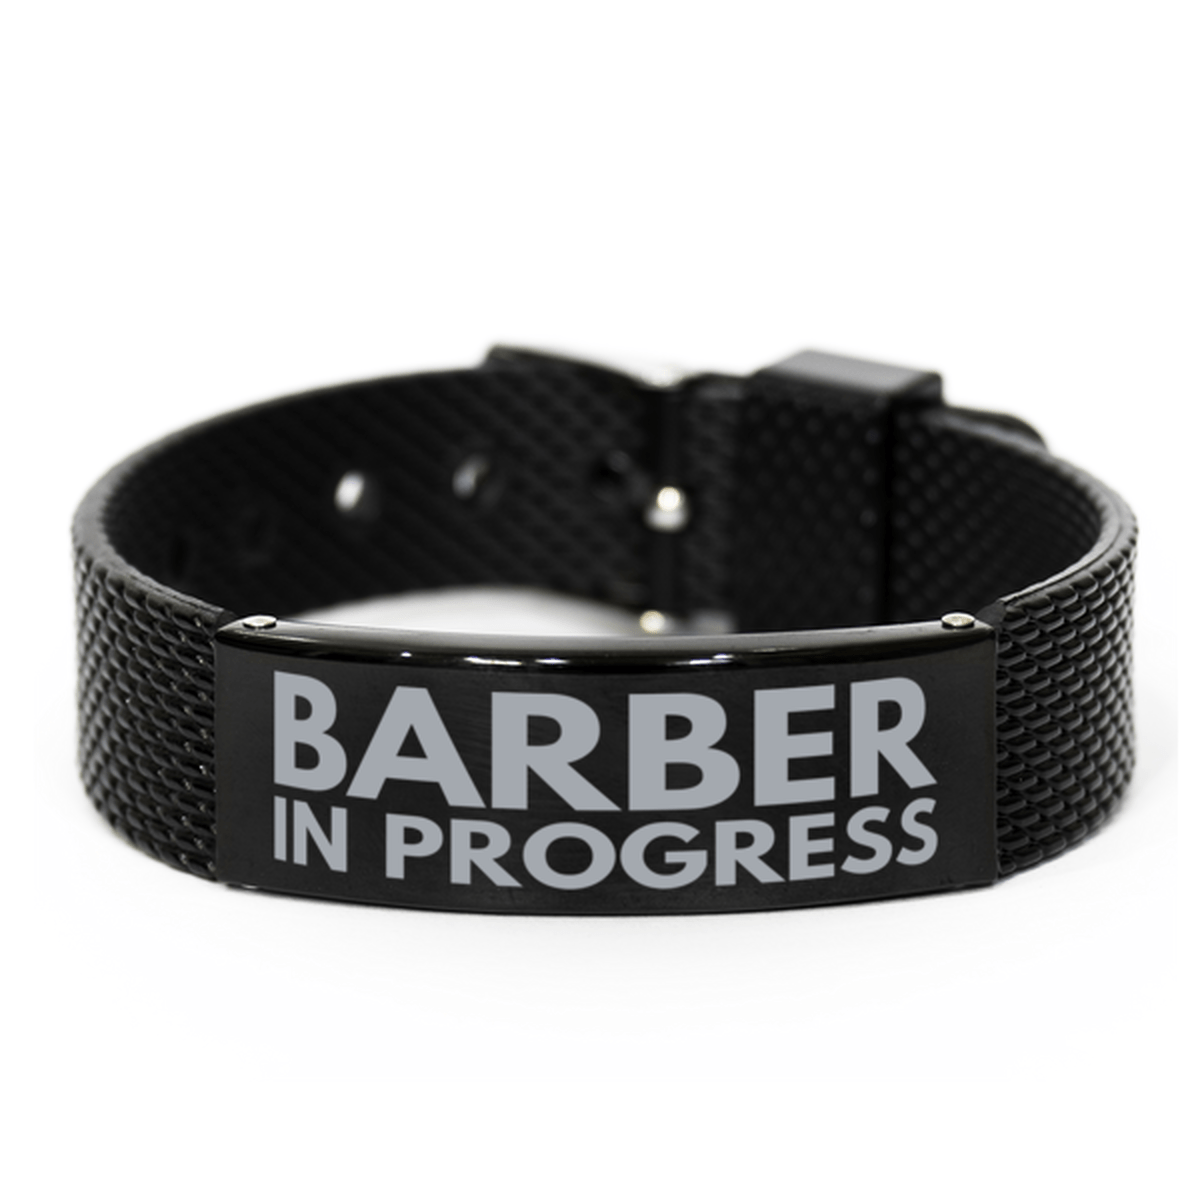 Inspirational Barber Black Shark Mesh Bracelet, Barber In Progress, Best Graduation Gifts for Students